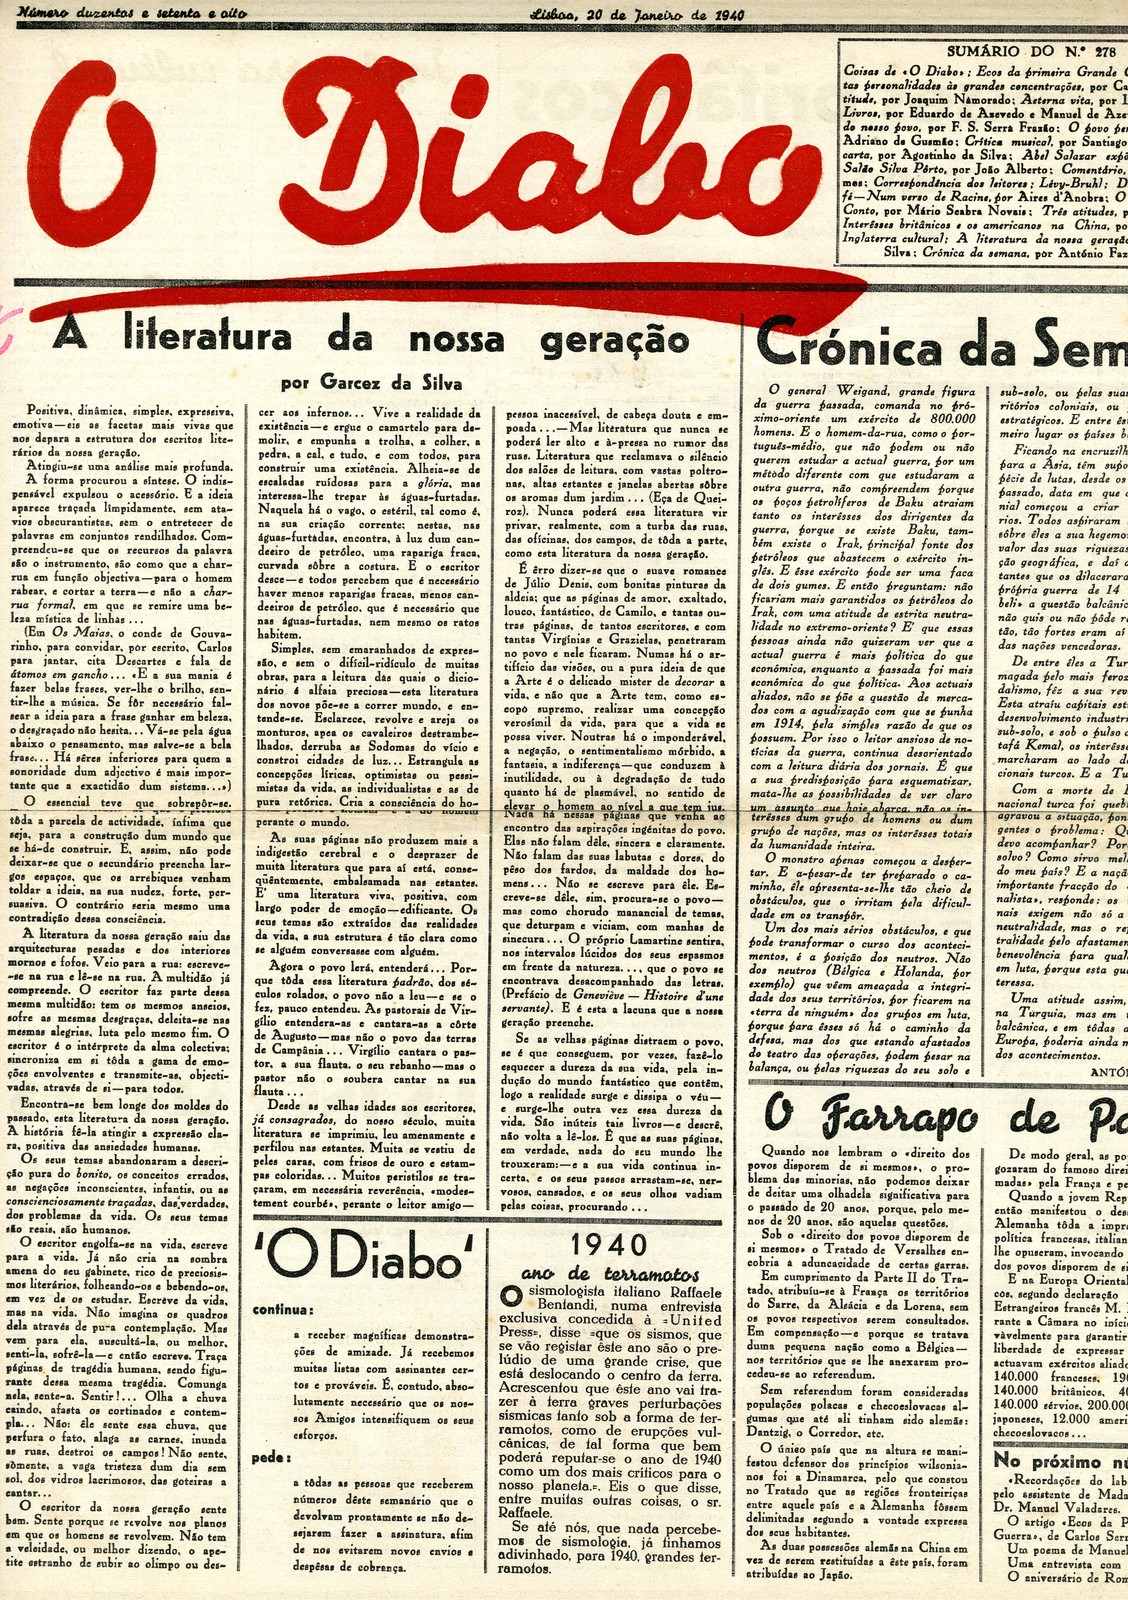 O Diabo, nº 278, 20 de janeiro de 1940